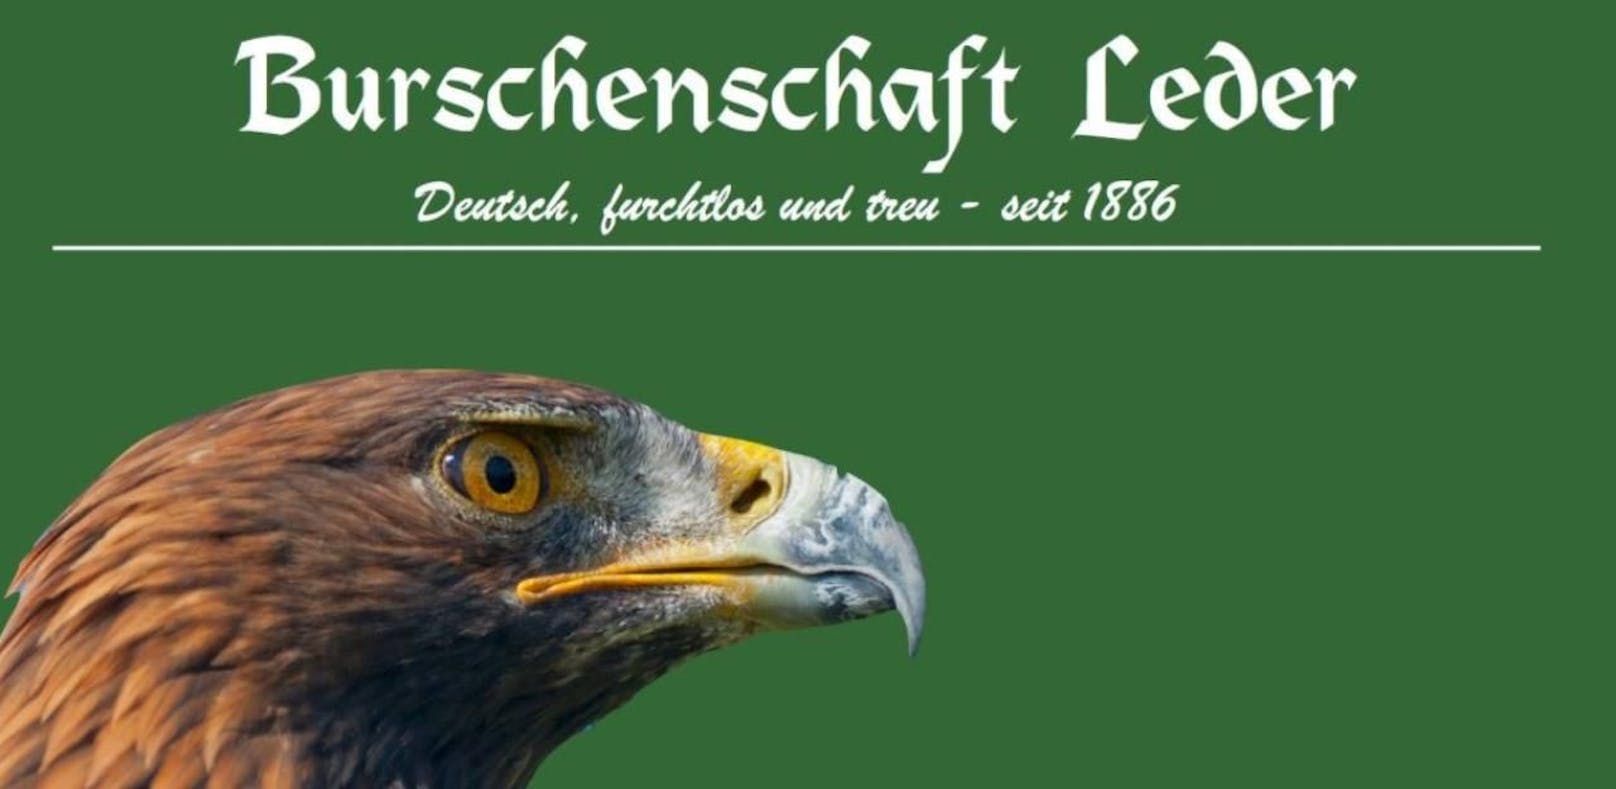 "Leder"-Burschenschafter ehrt SS-Offizier im Netz